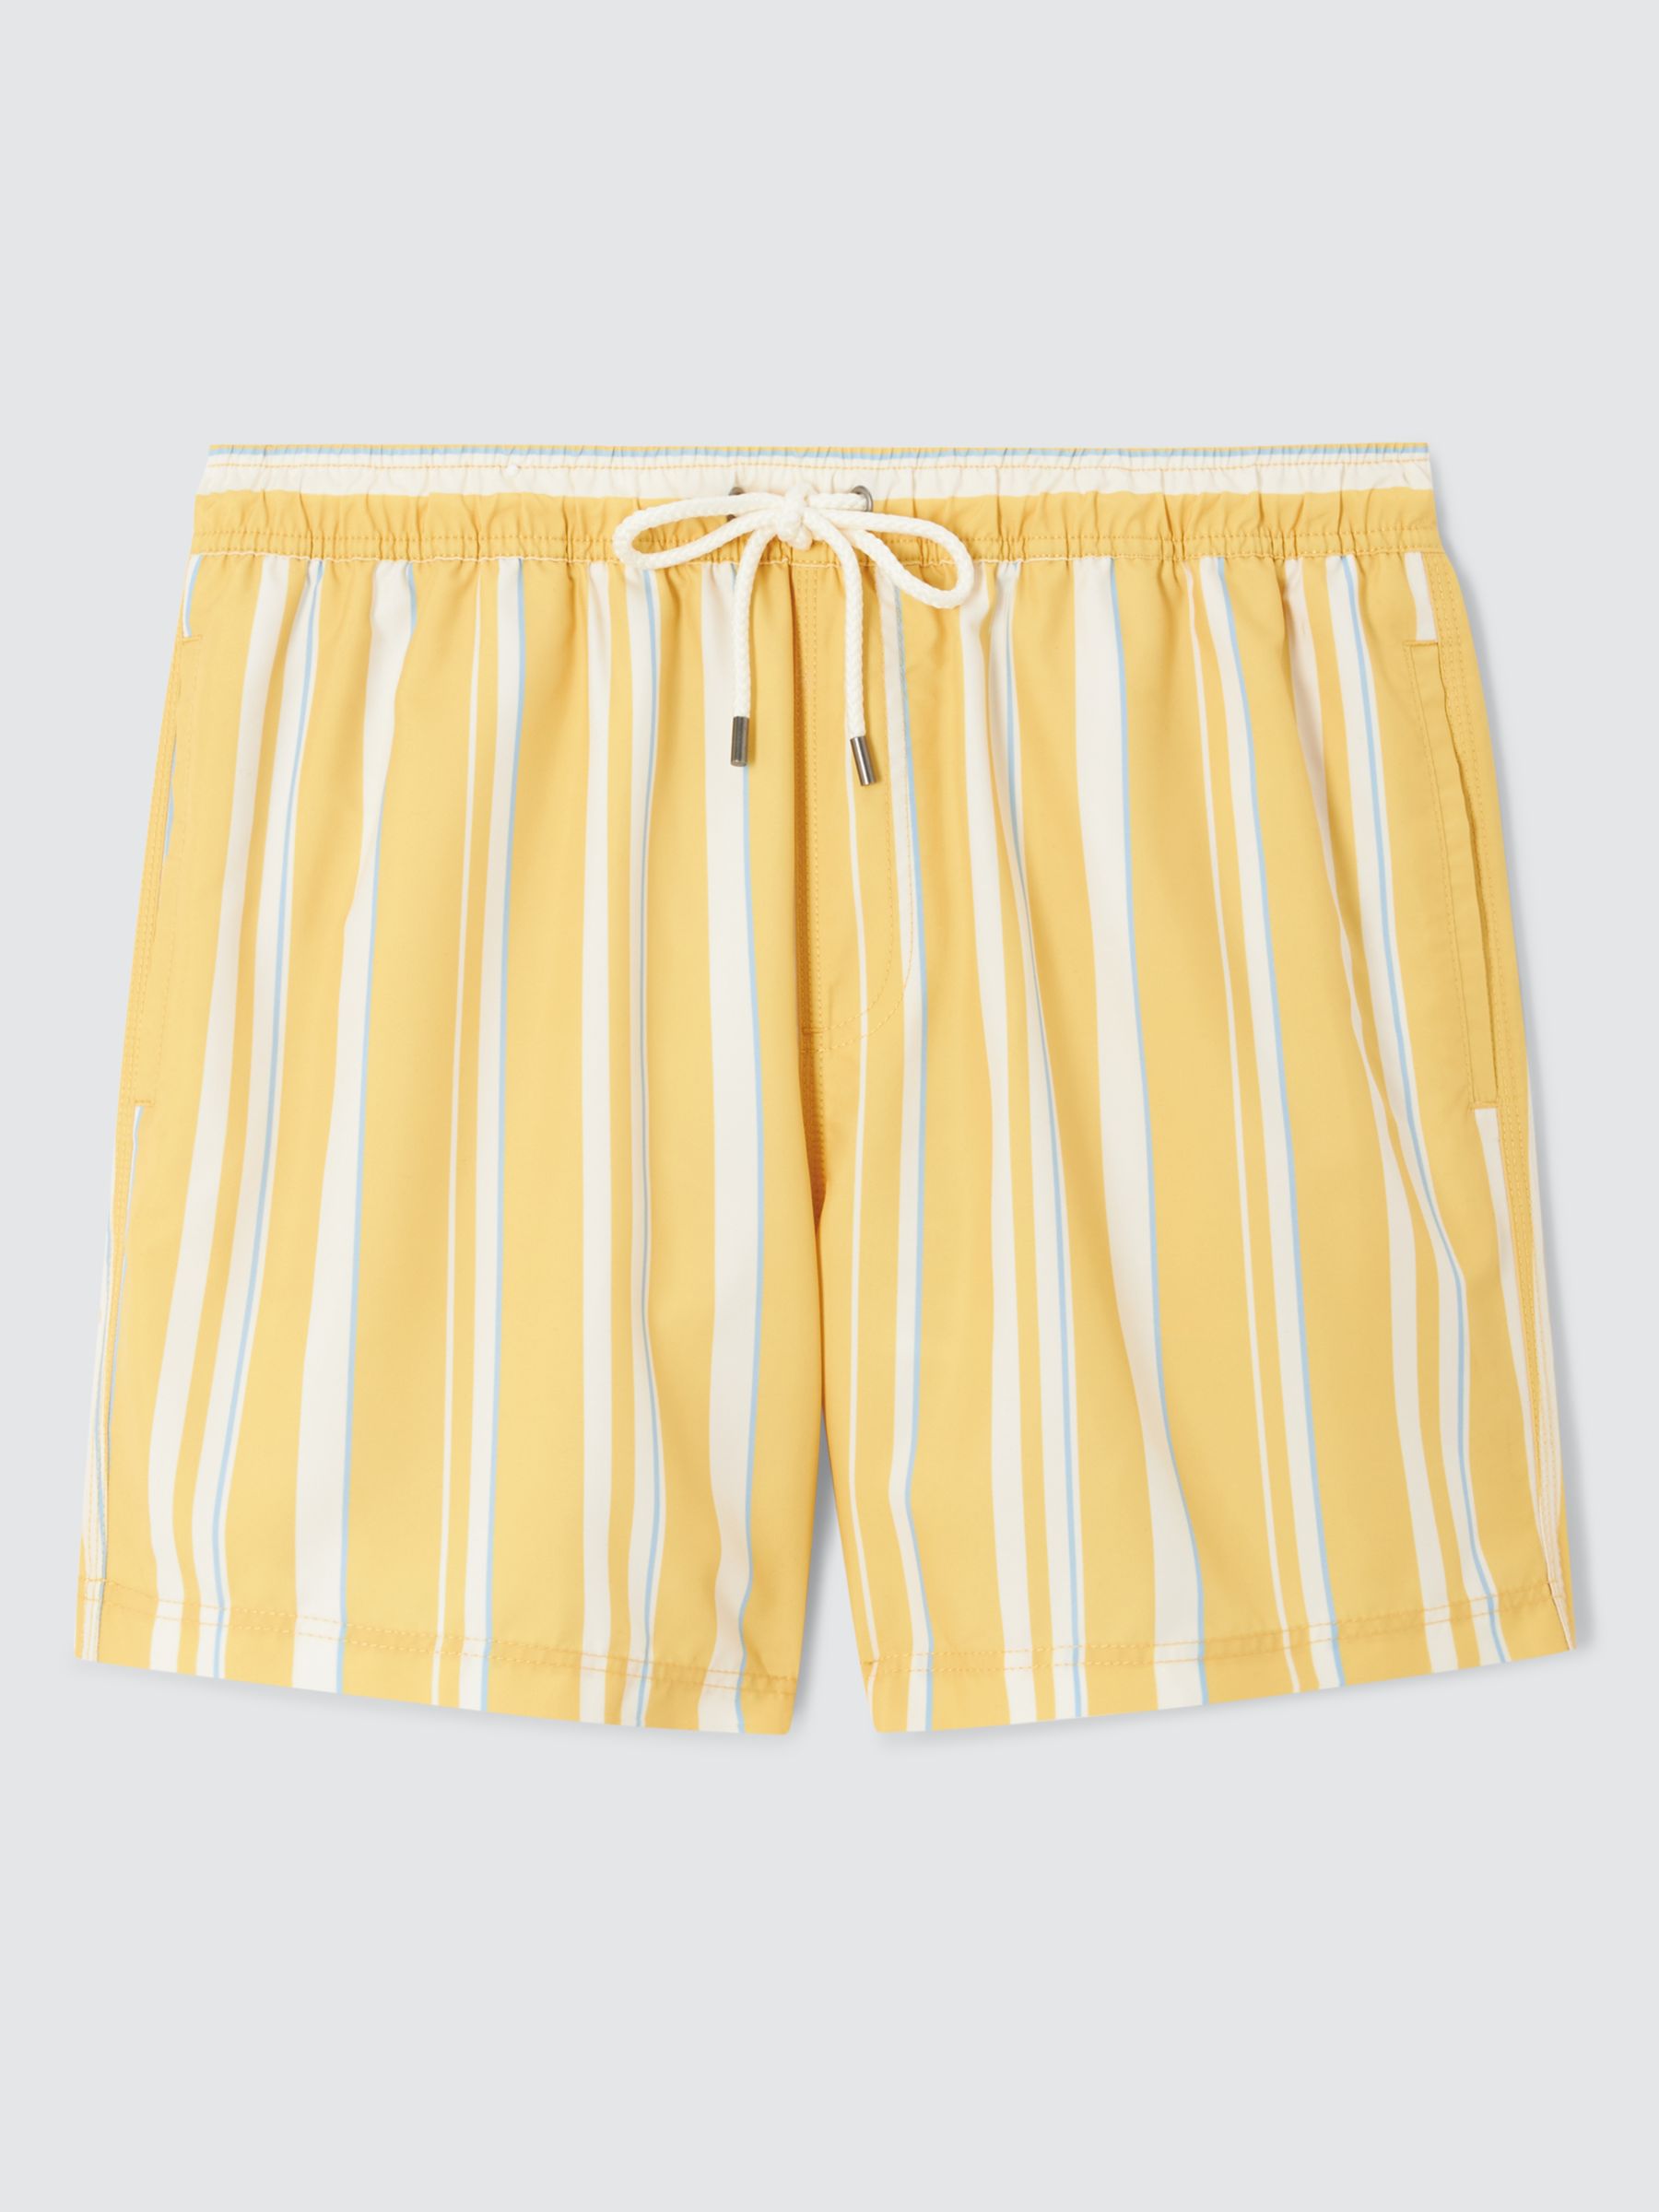 John Lewis Recycled Polyester Stripe Swim Shorts, Yellow/Multi, M